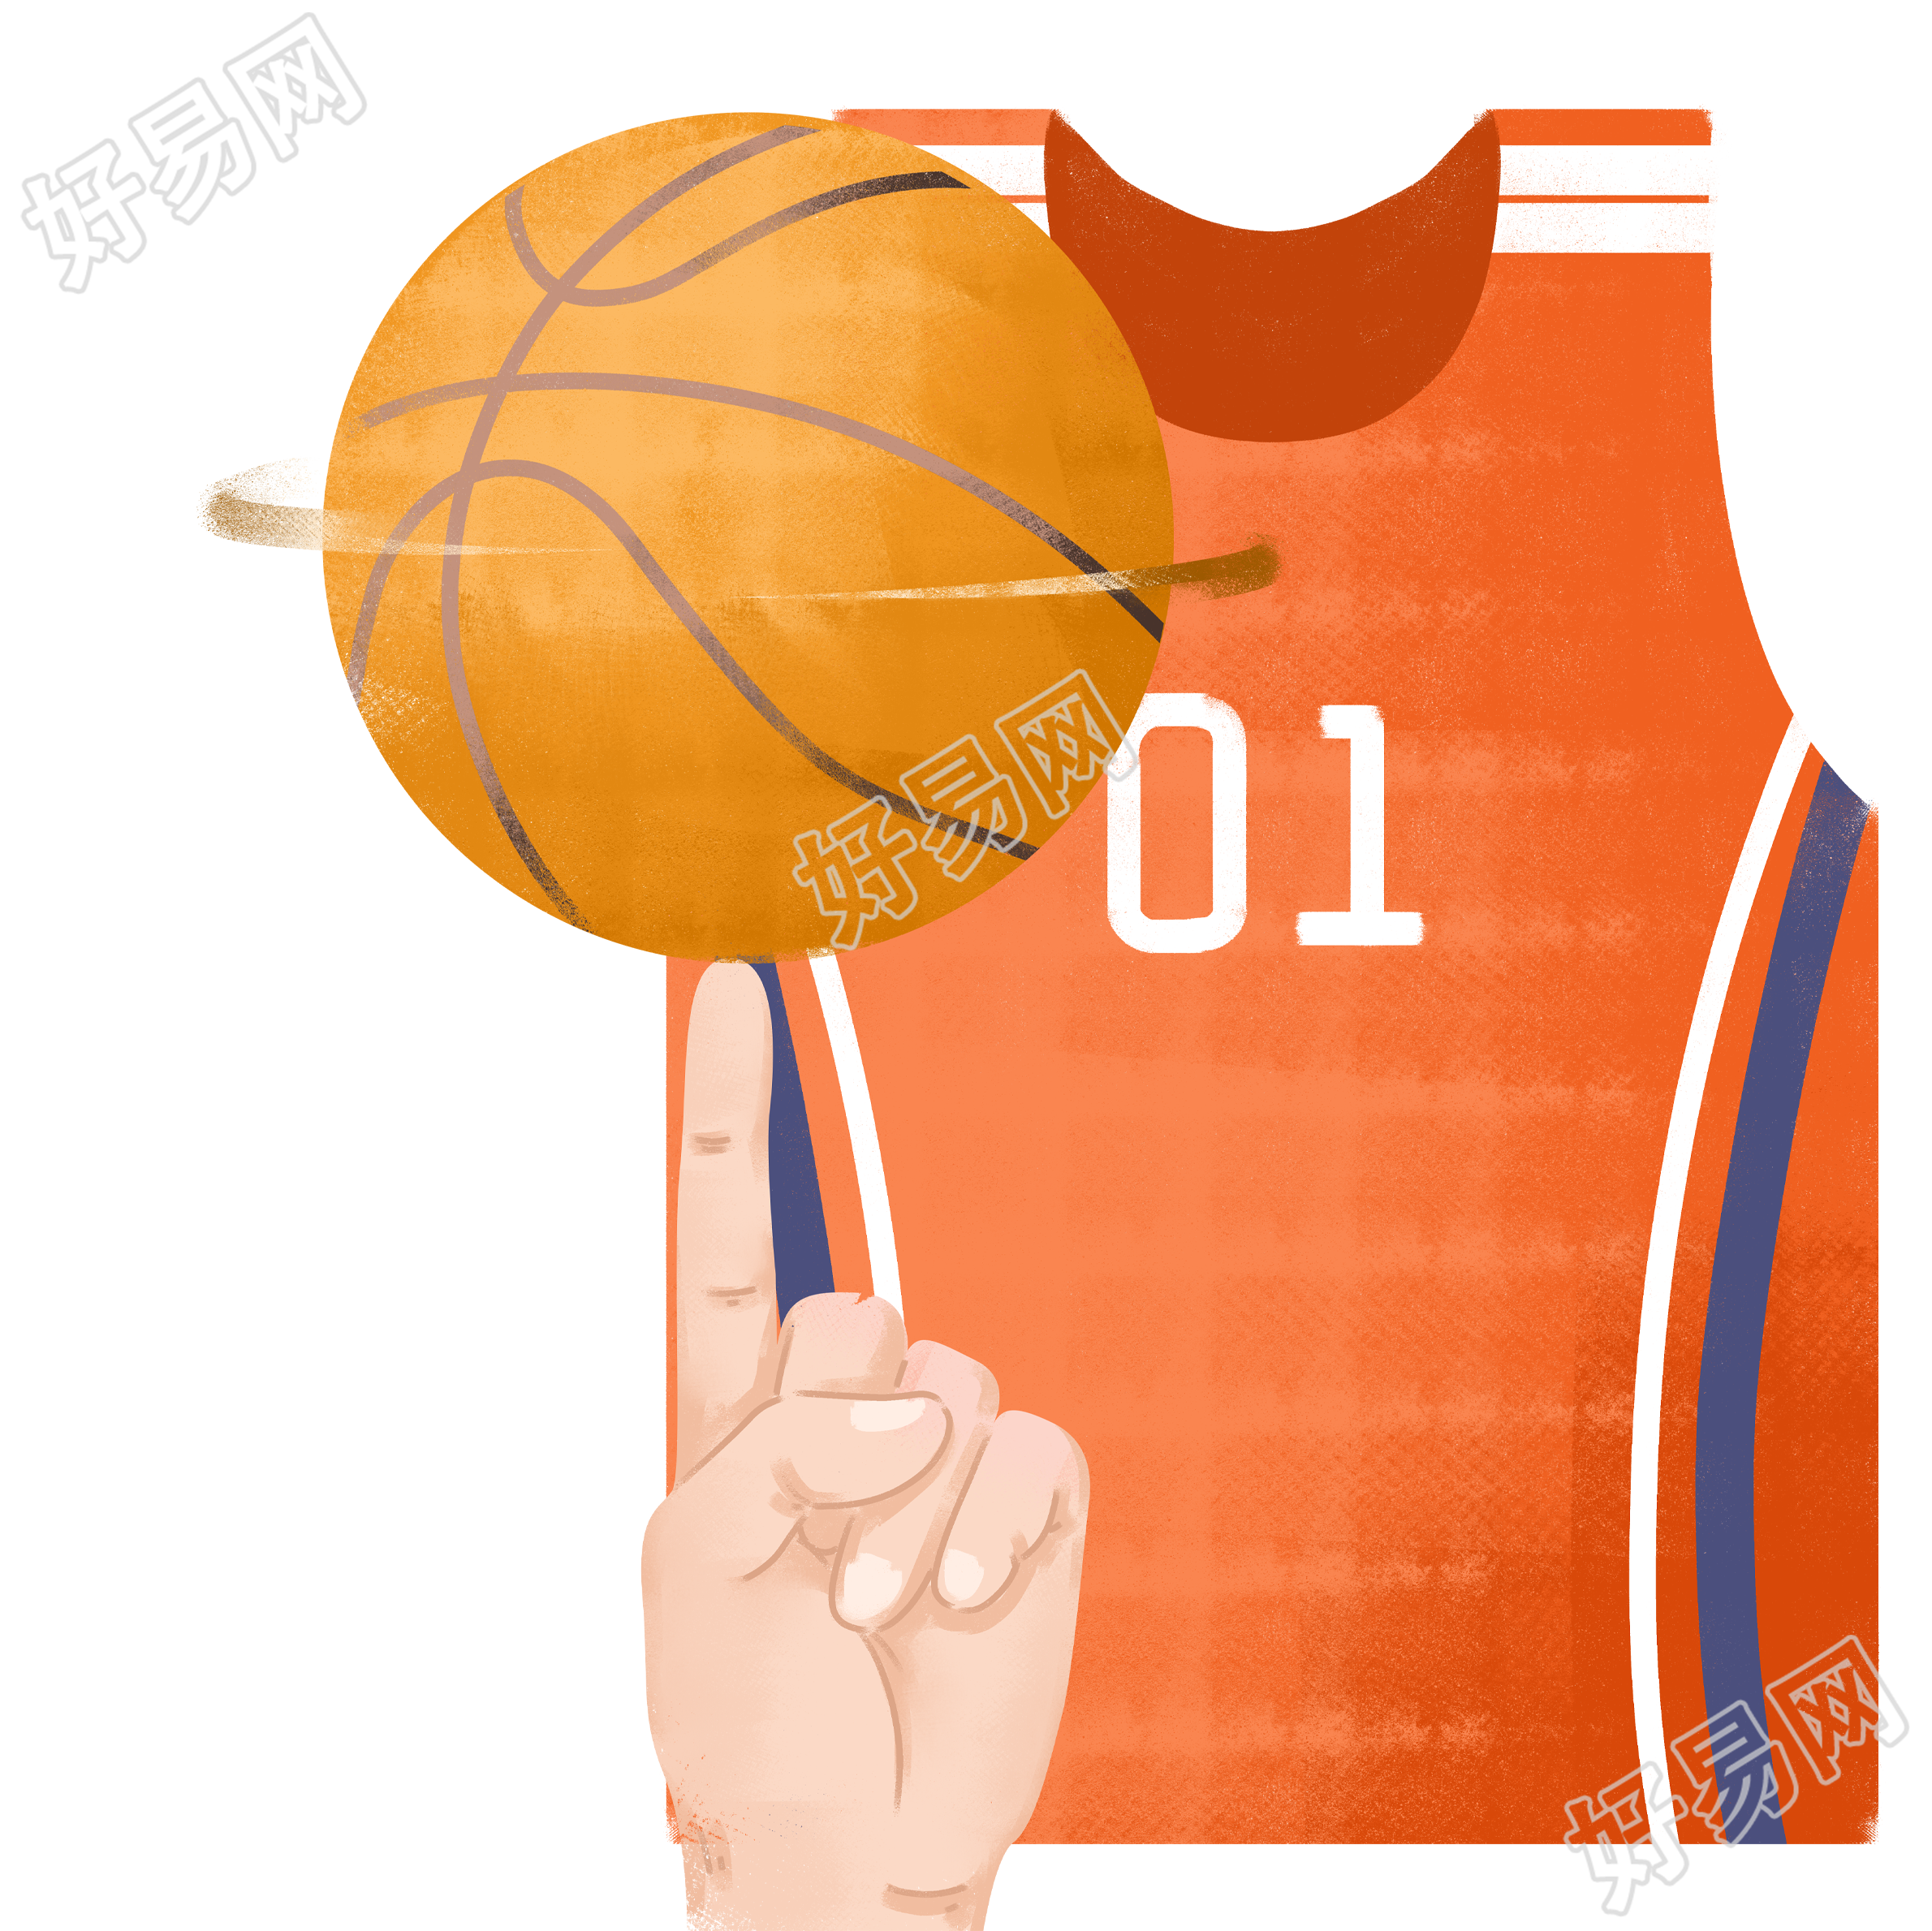 篮球比赛场中手转篮球橙色球衣素材